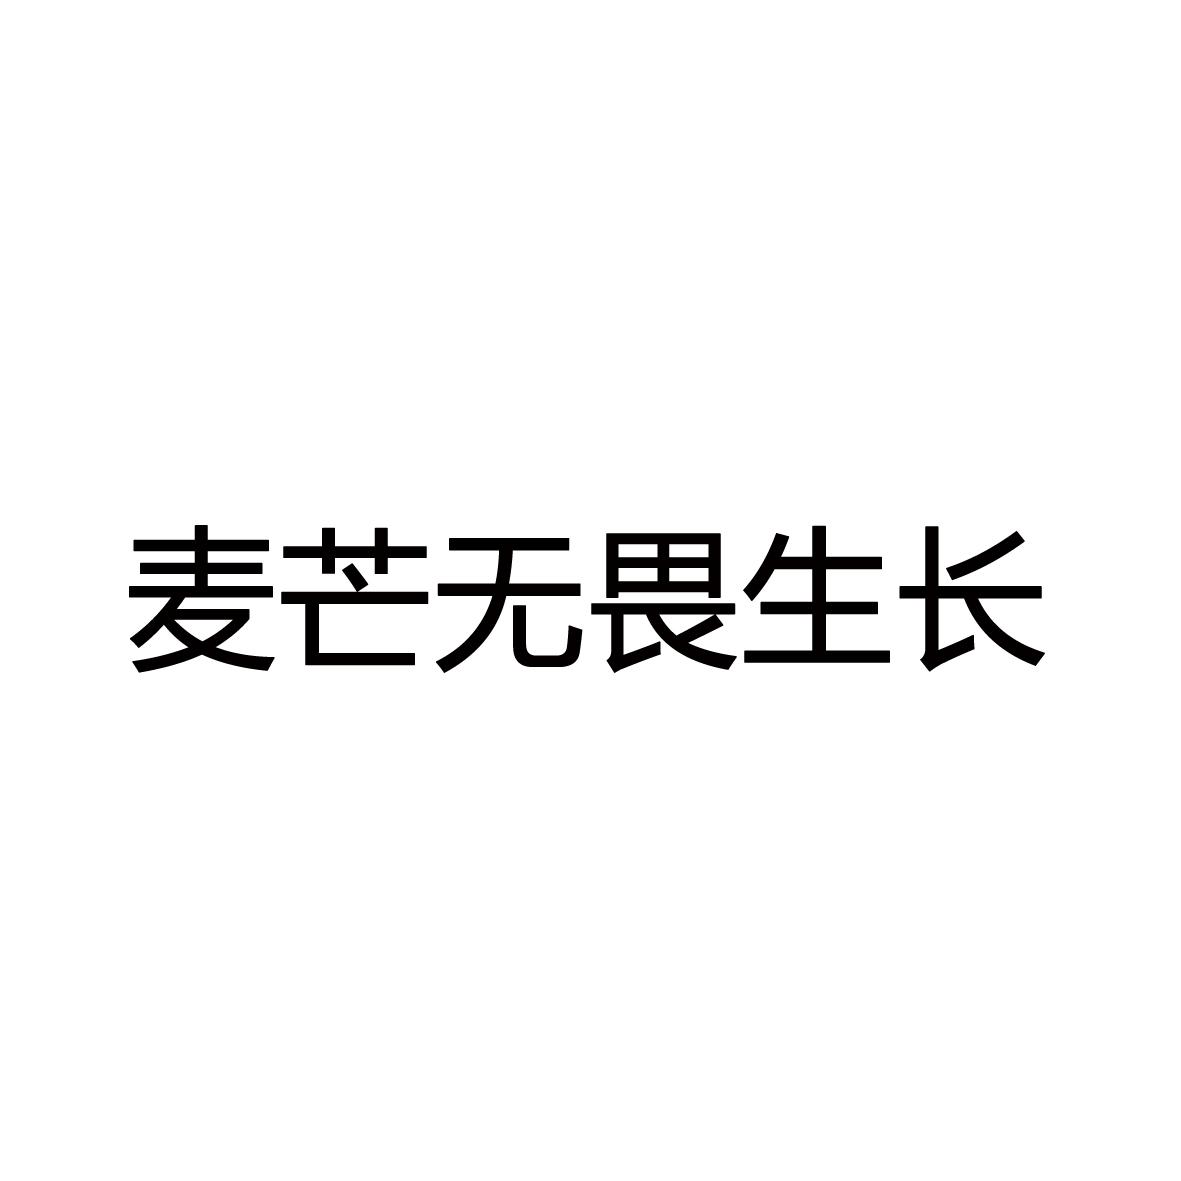 麦芒无畏生长logo